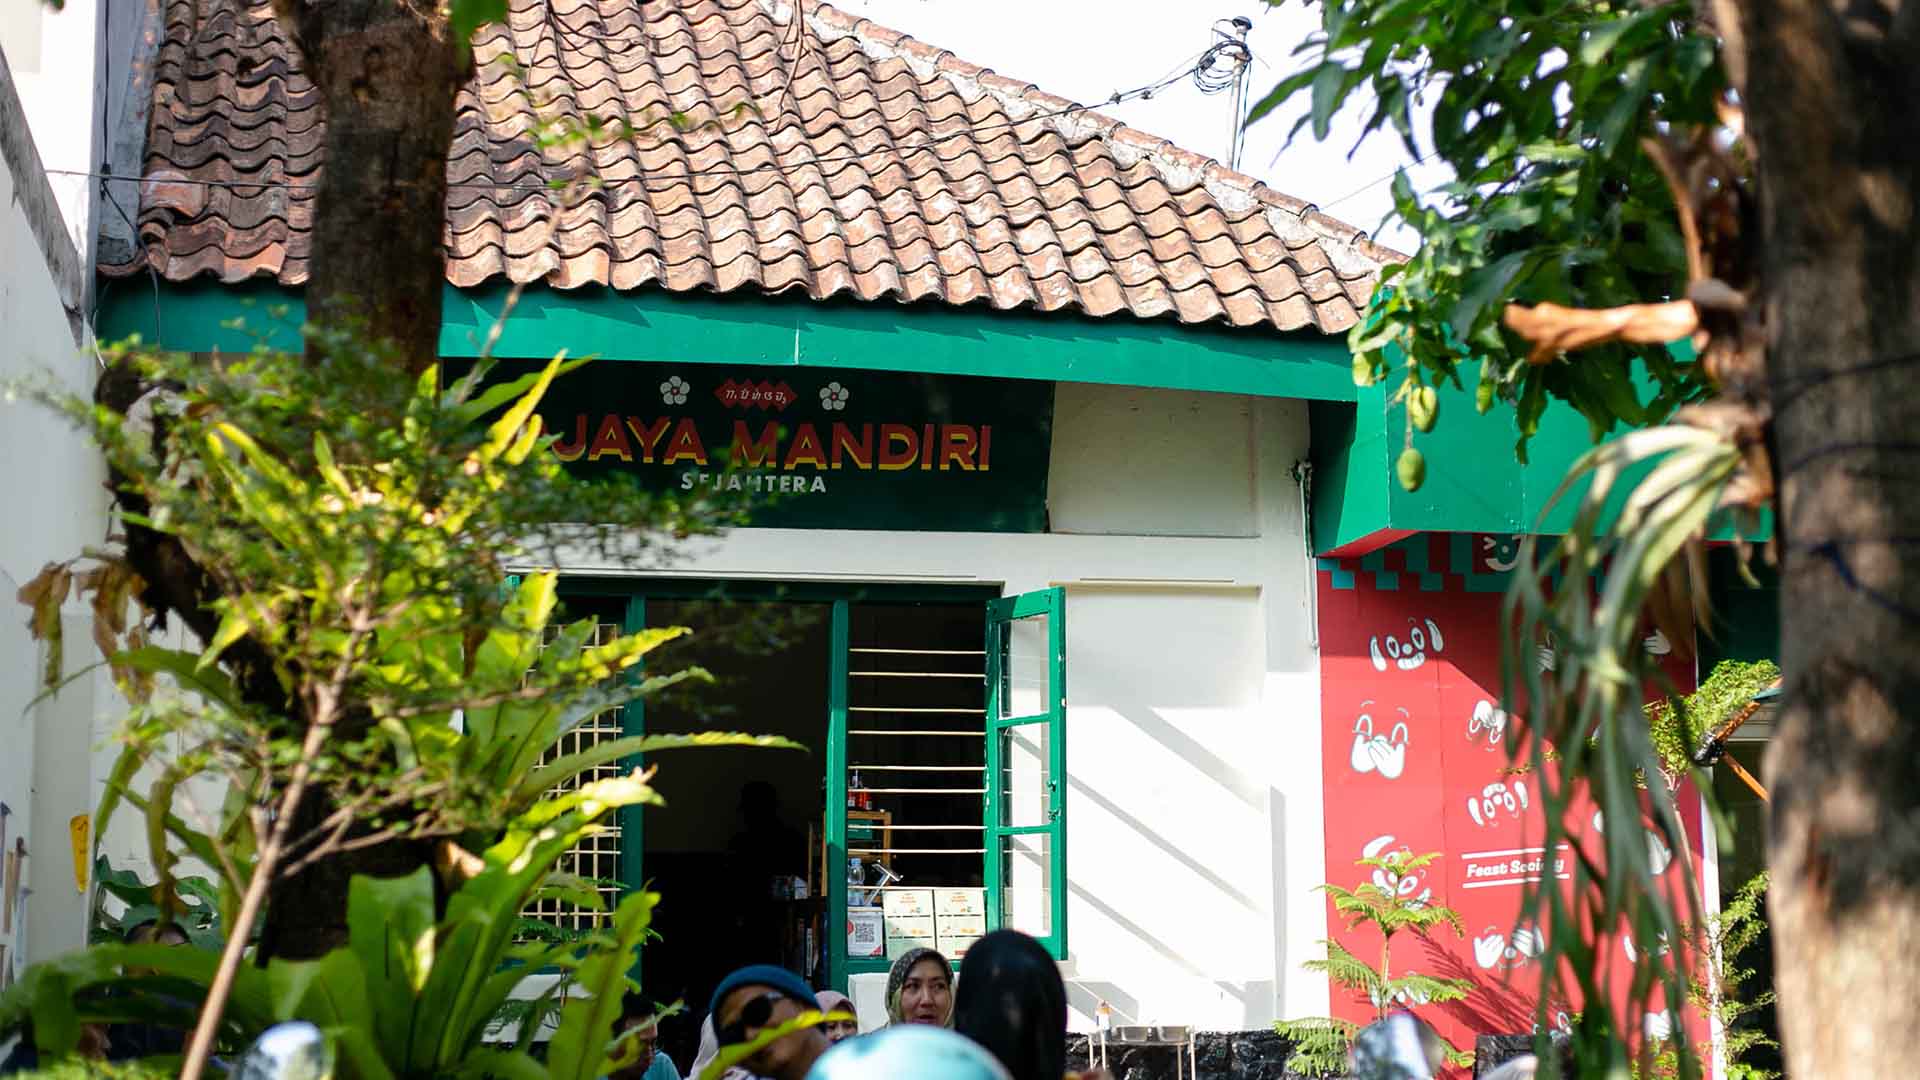 Sarapan Makanan Jadul di Djaya Mandiri Sejahtera | Uncov - uncov.co.id